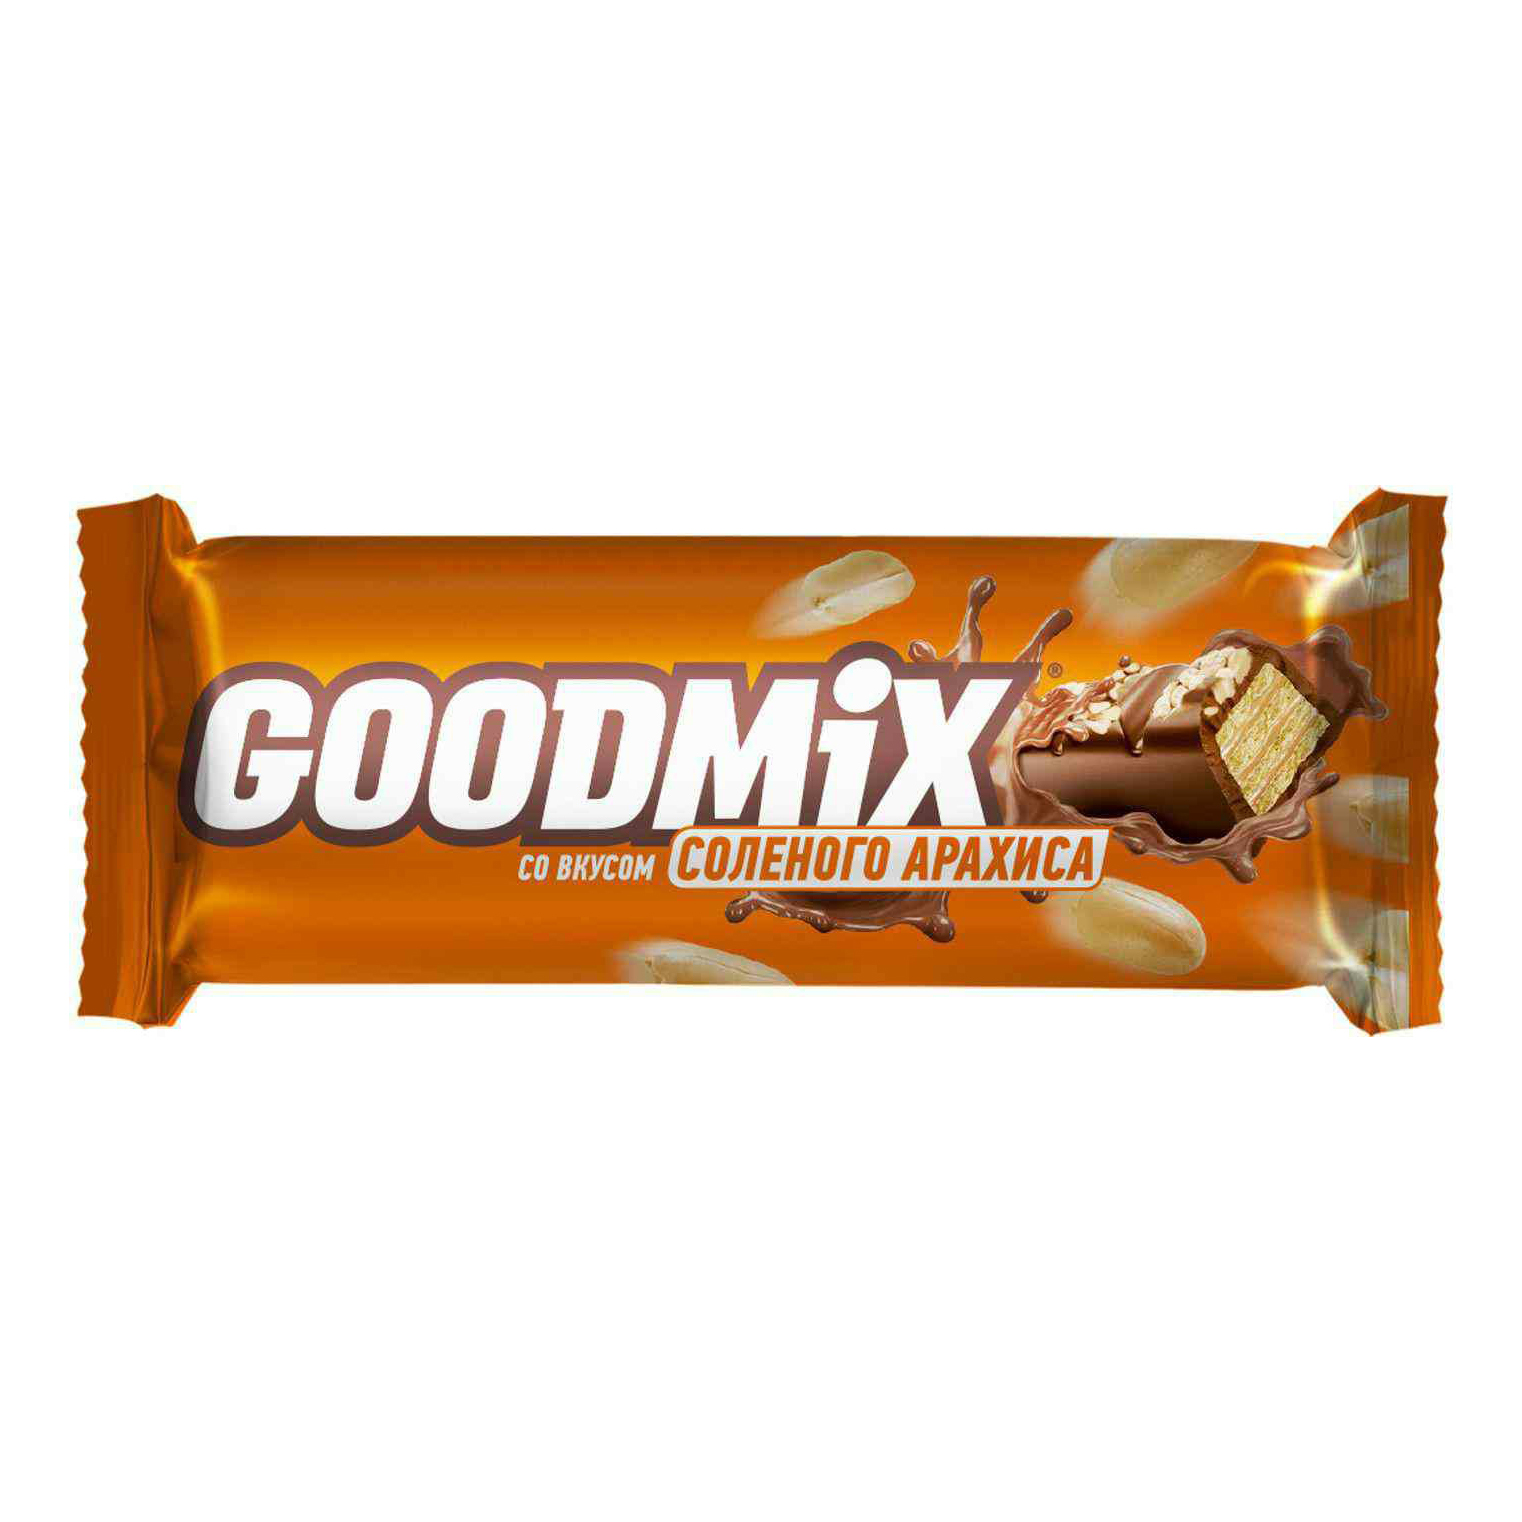 Конфеты Goodmix со вкусом соленого арахиса с хрустящей вафлей